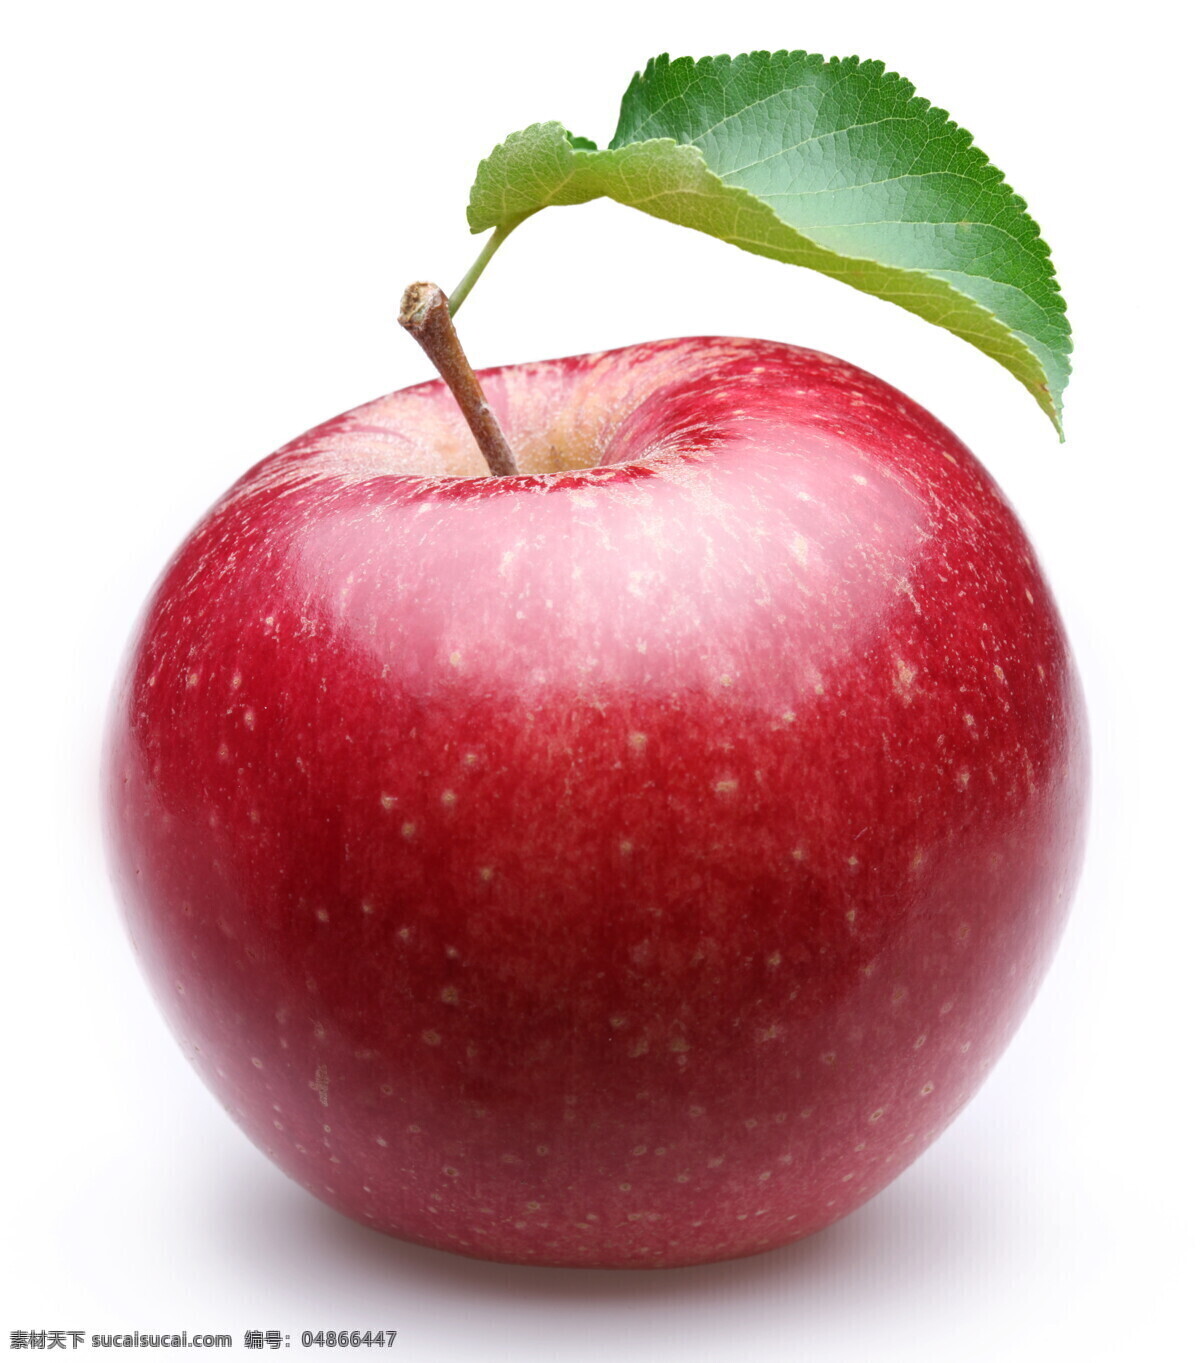 长 叶子 红苹果 长着叶子 绿叶 水果 苹果图片 餐饮美食